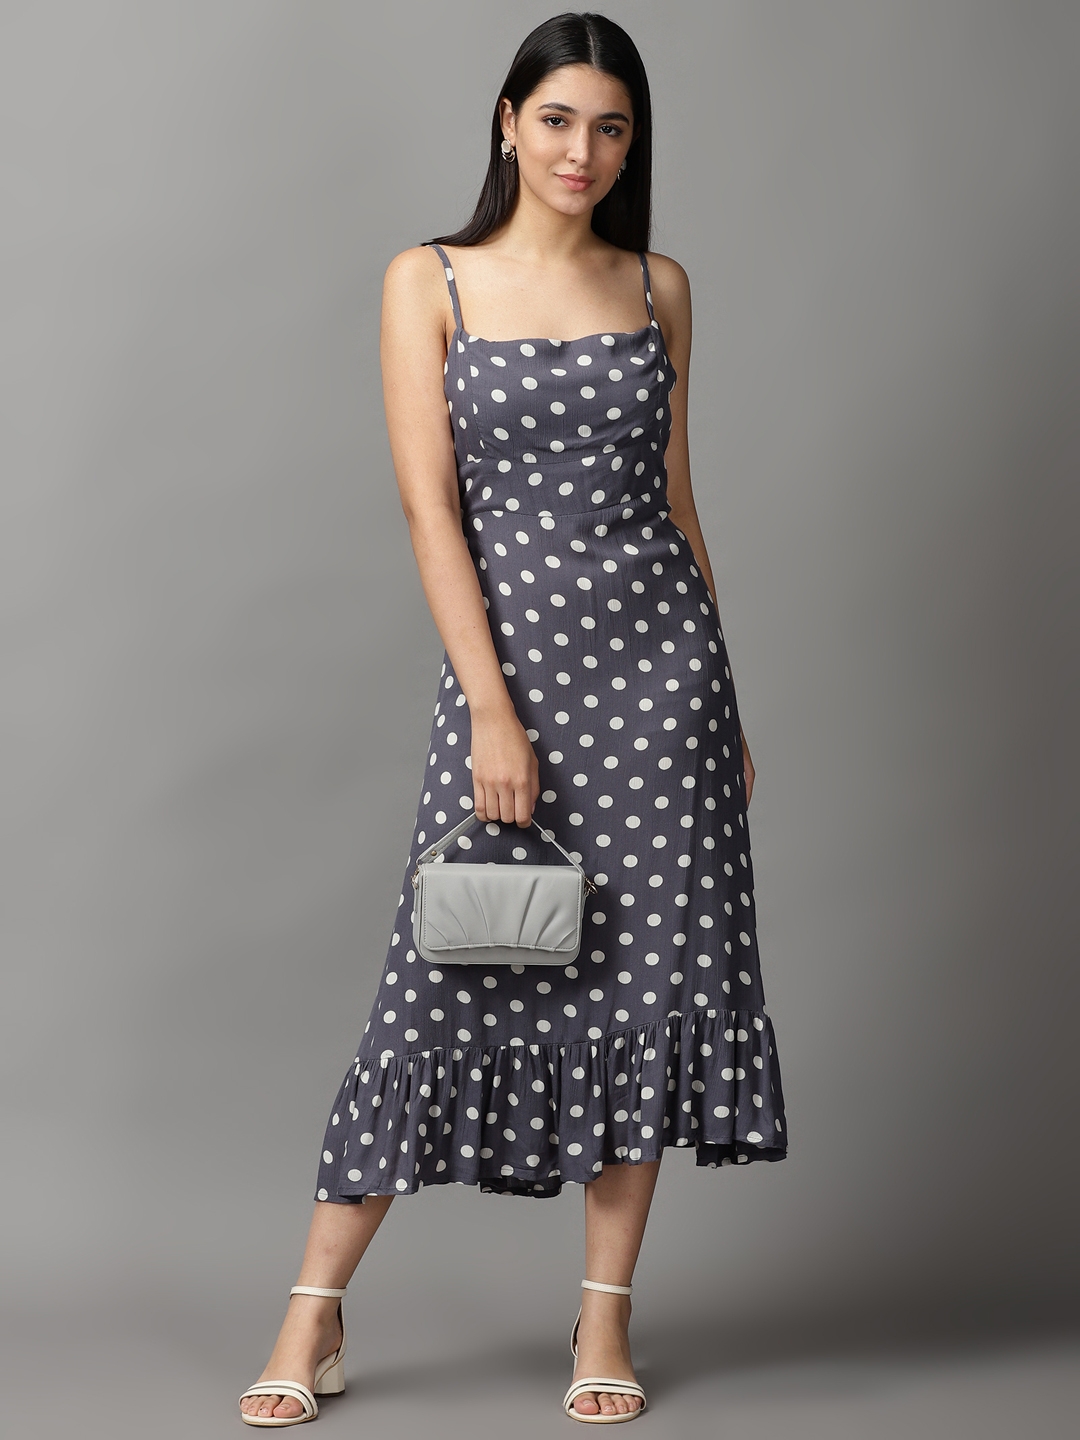 Women's Grey Viscose Rayon Polka Dots Dresses